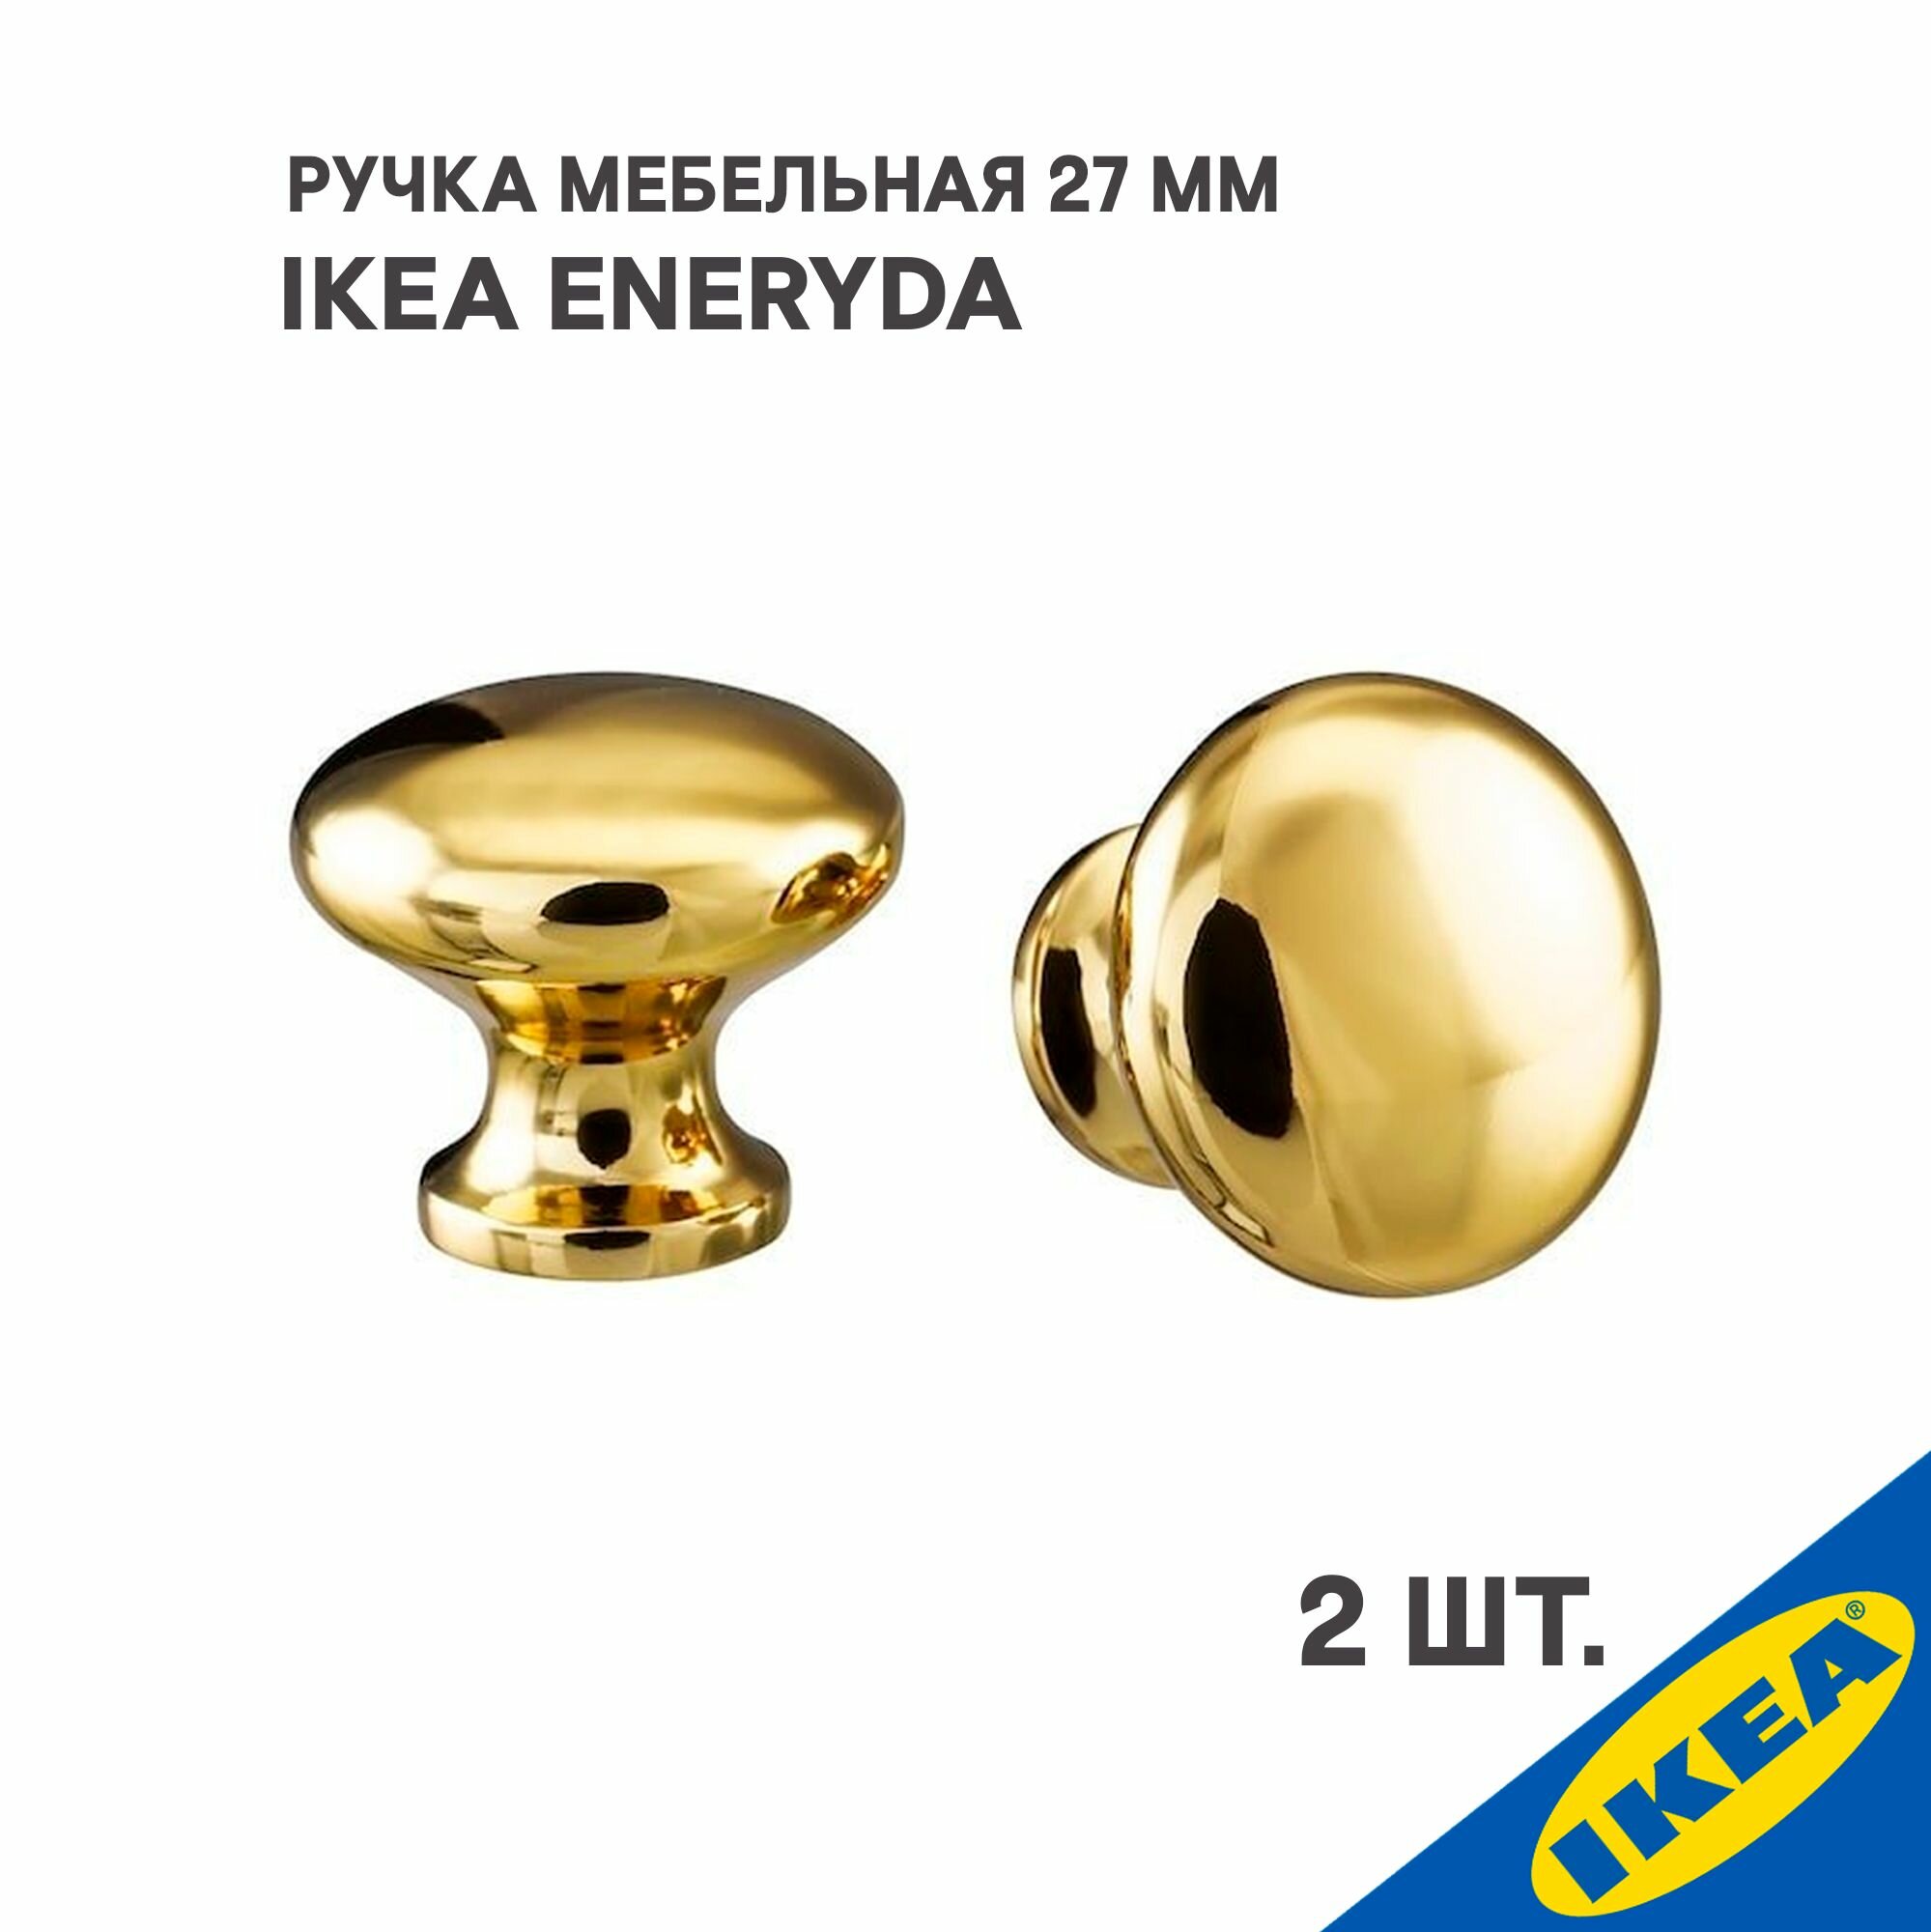 Ручка мебельная IKEA ENERYDA энерида, 27 мм, 2шт, желтая медь